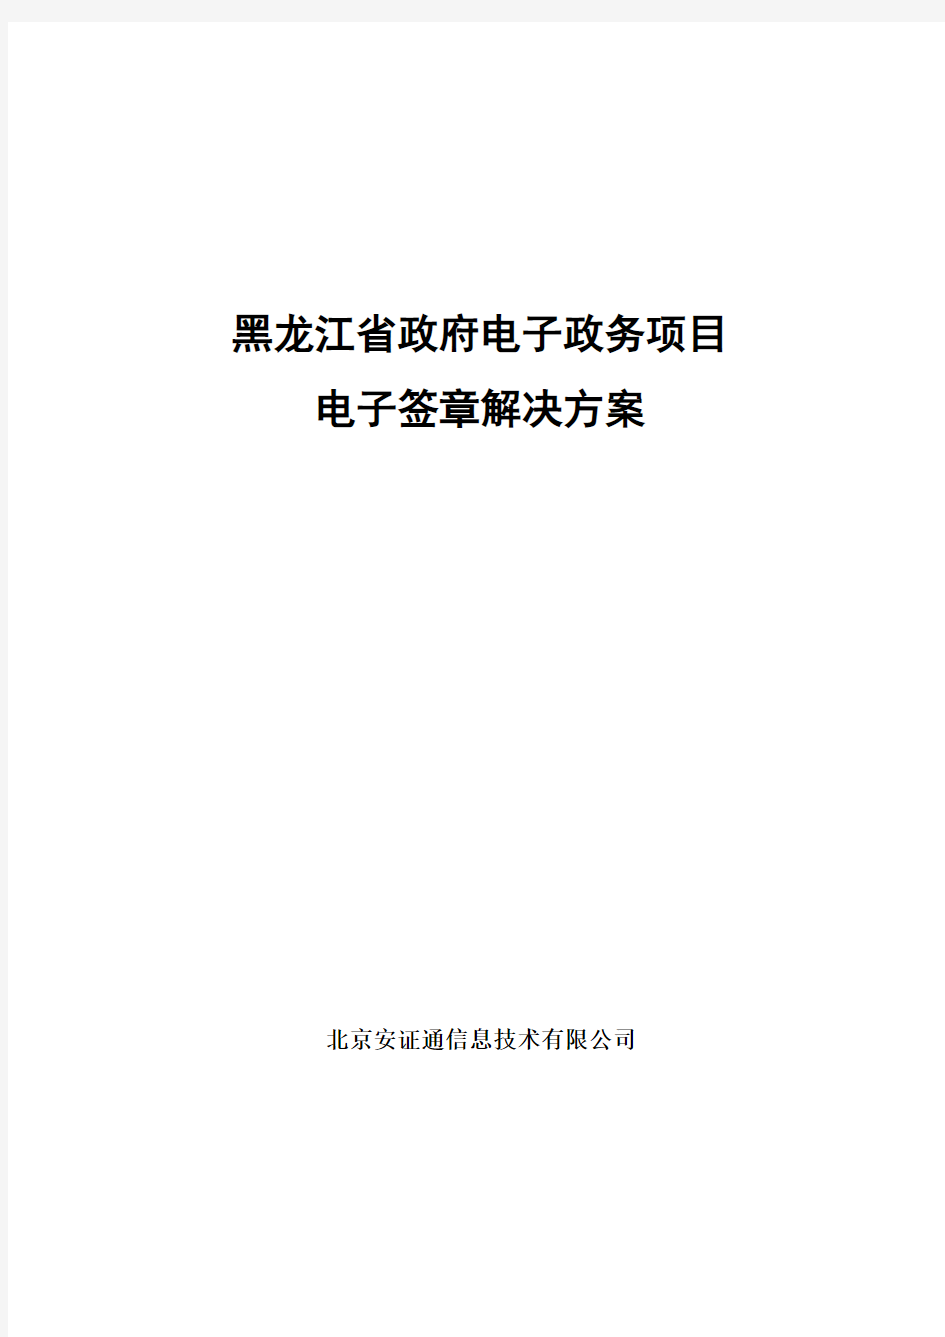 黑龙江省政府电子政务项目电子签章解决方案